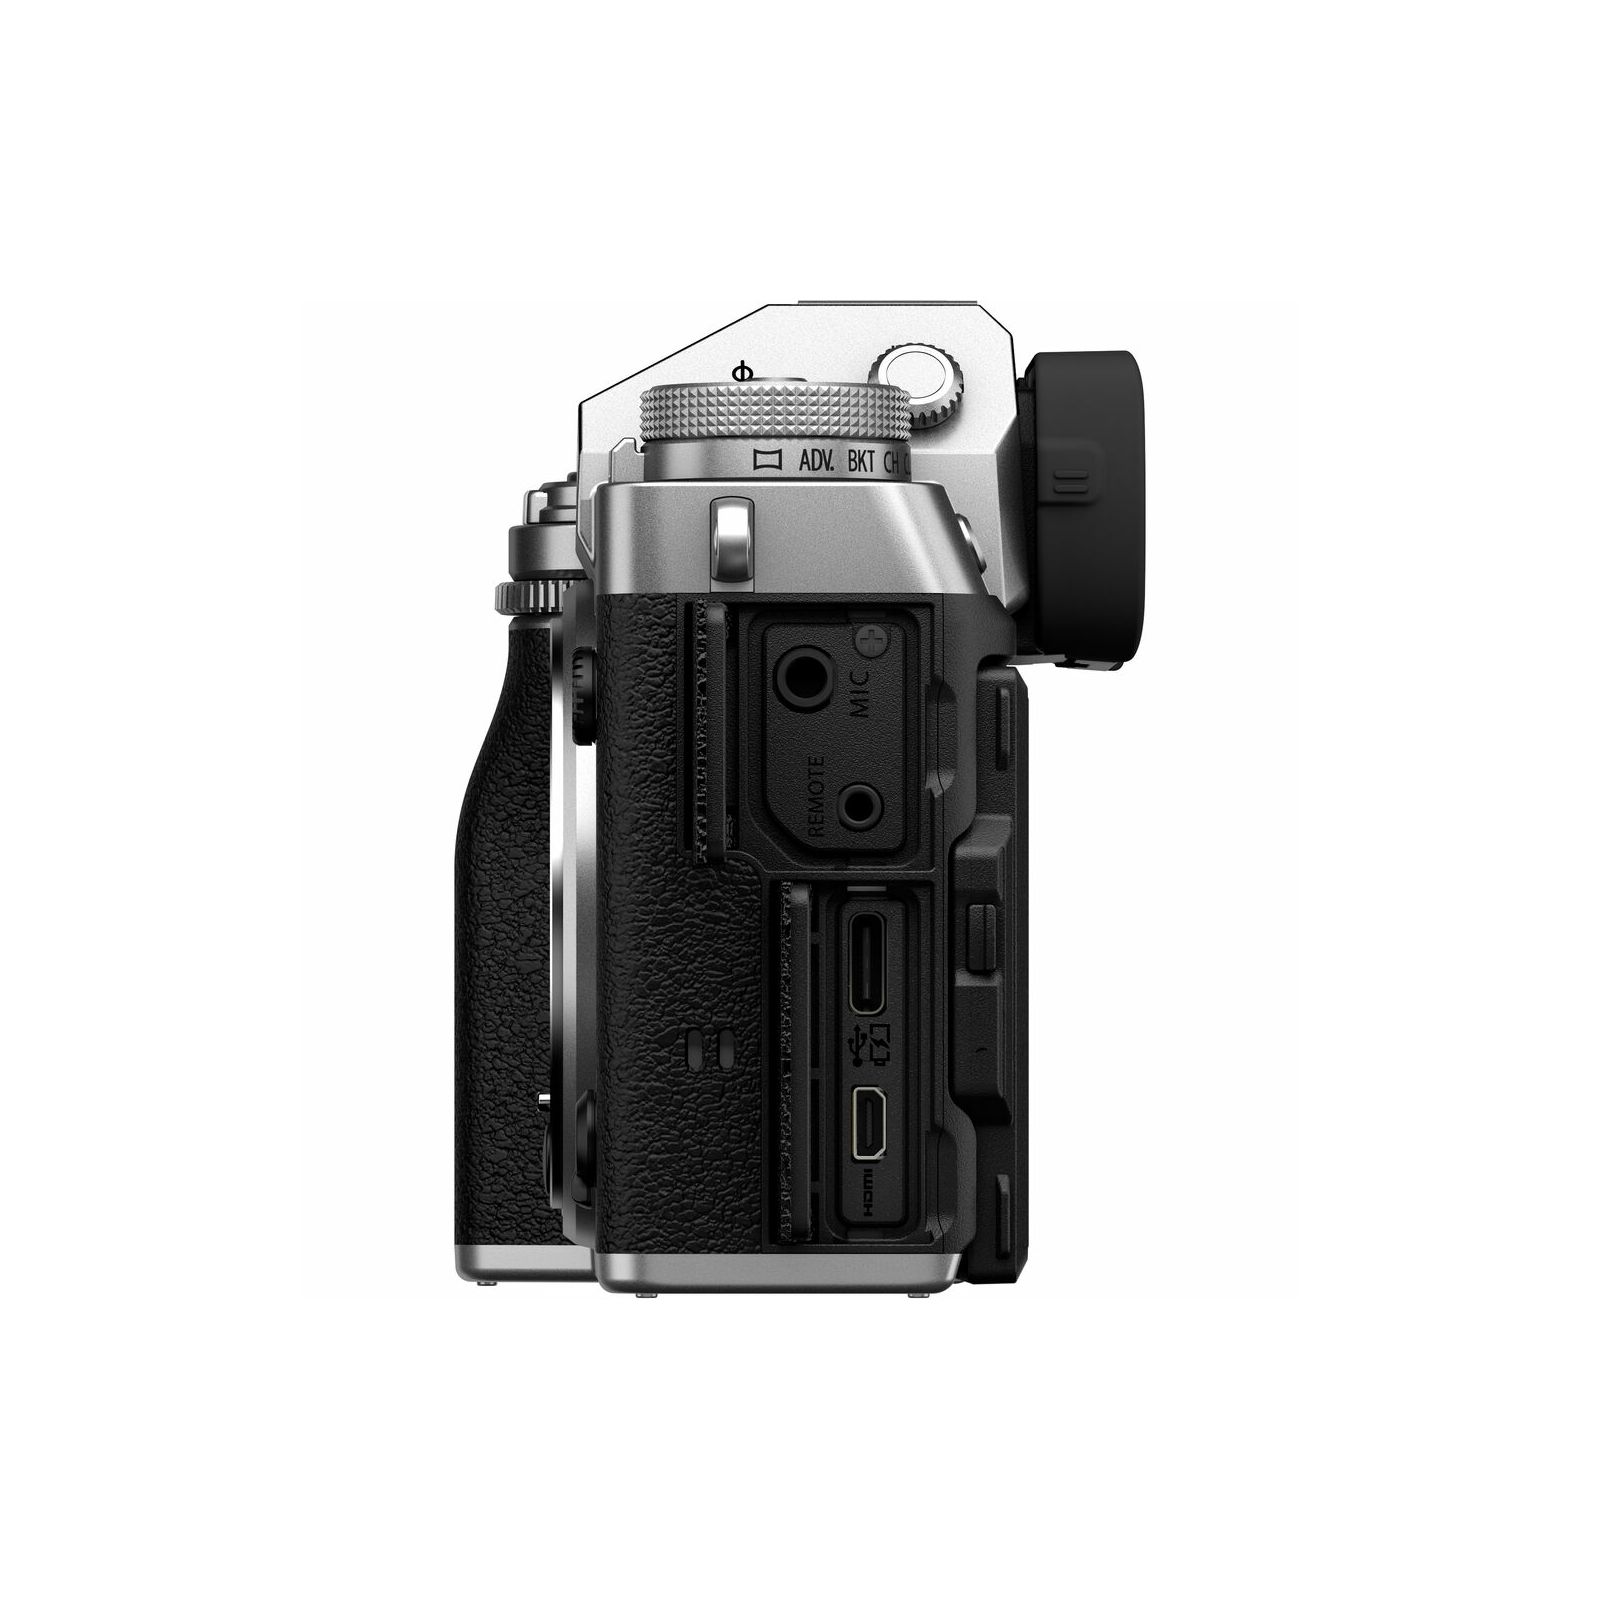 Fujifilm X-T5 + XF 18-55mm f/2.8-4 R LM OIS Silver srebreni Fuji digitalni mirrorless fotoaparat s objektivom